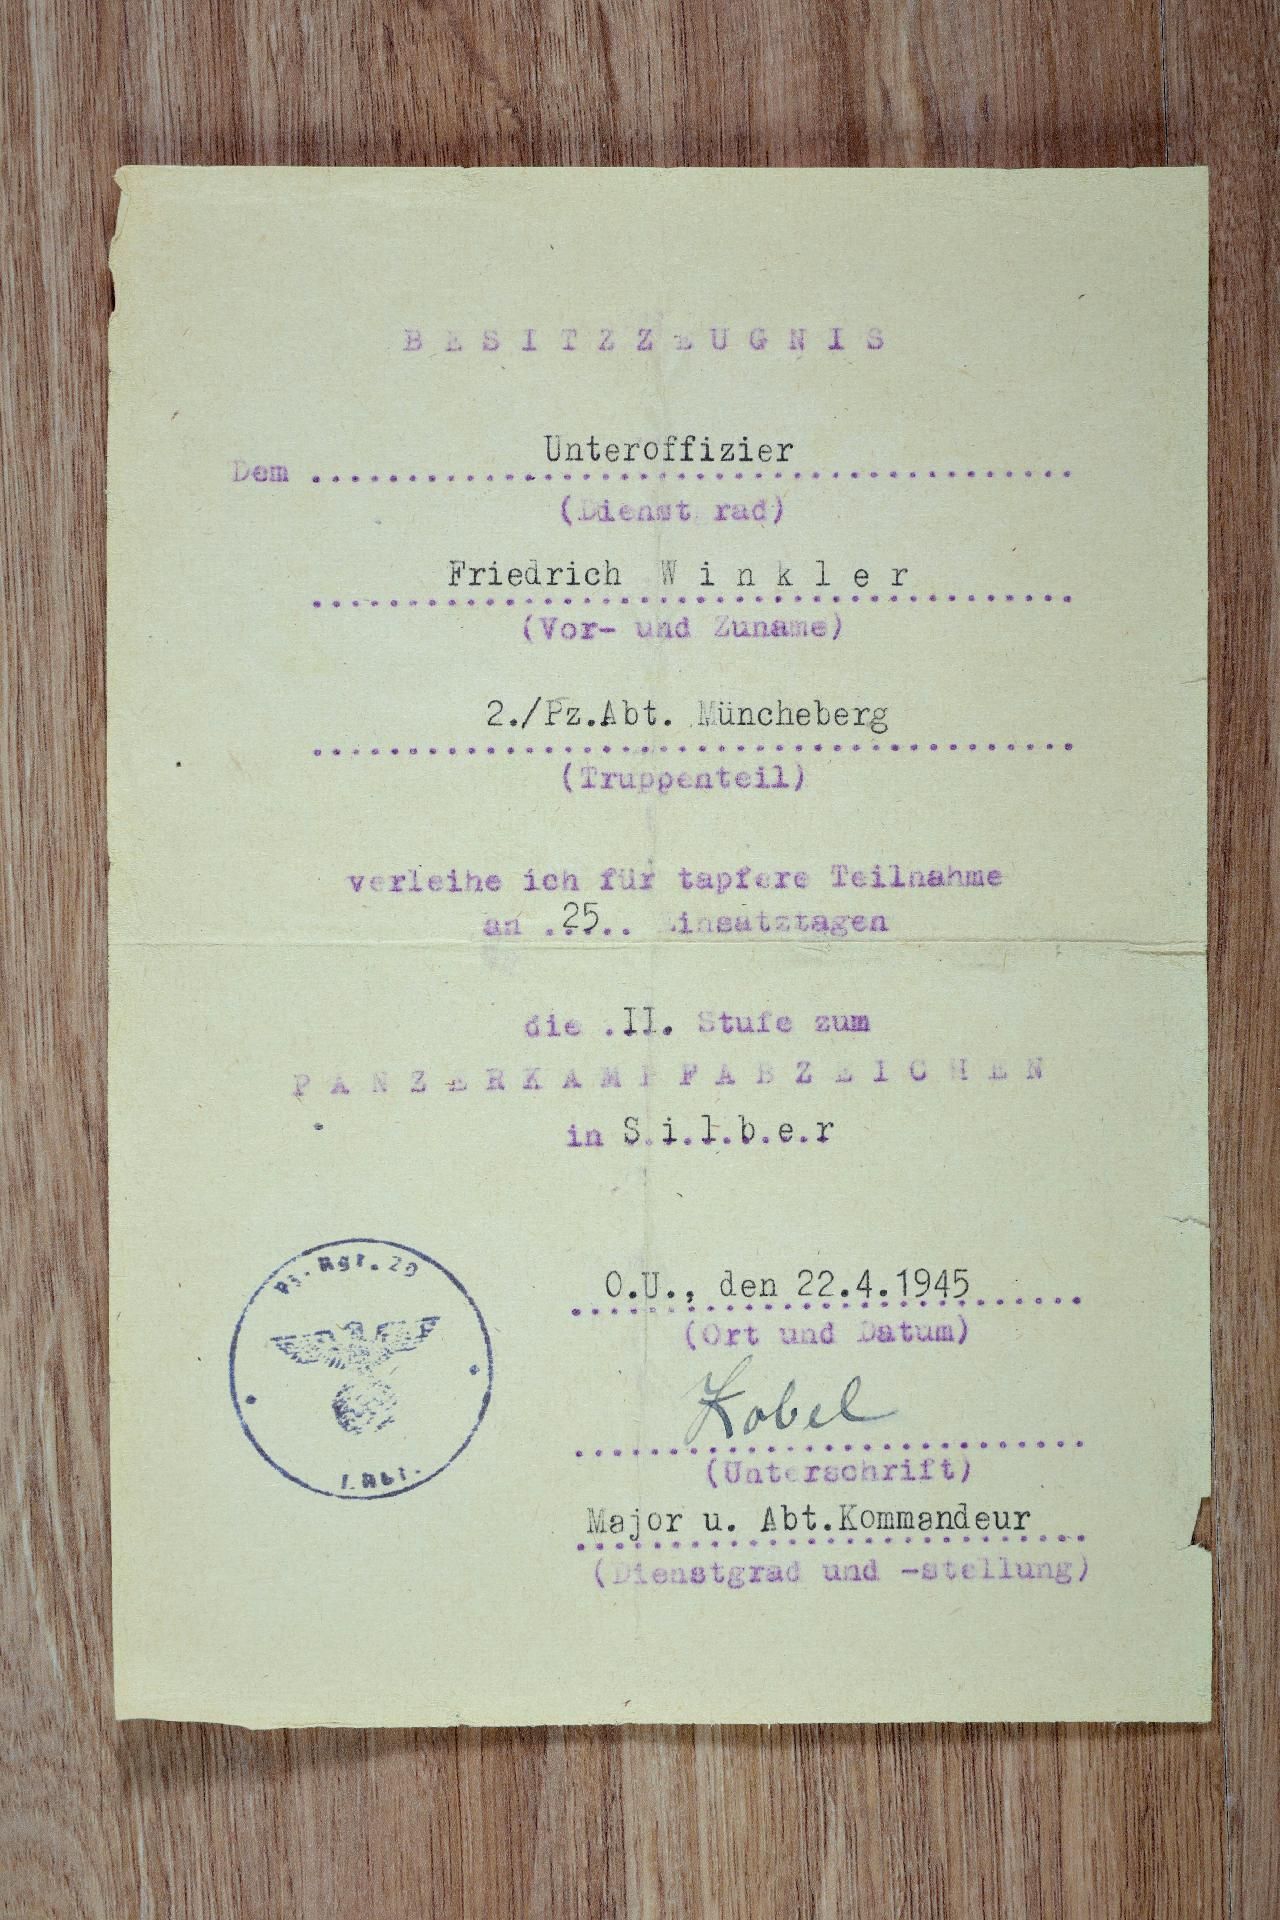 Panzertruppe : Urkundengruppe des Unteroffiziers Friedrich Winkler, Panzer Regiment 29, Panzer A... - Bild 6 aus 6